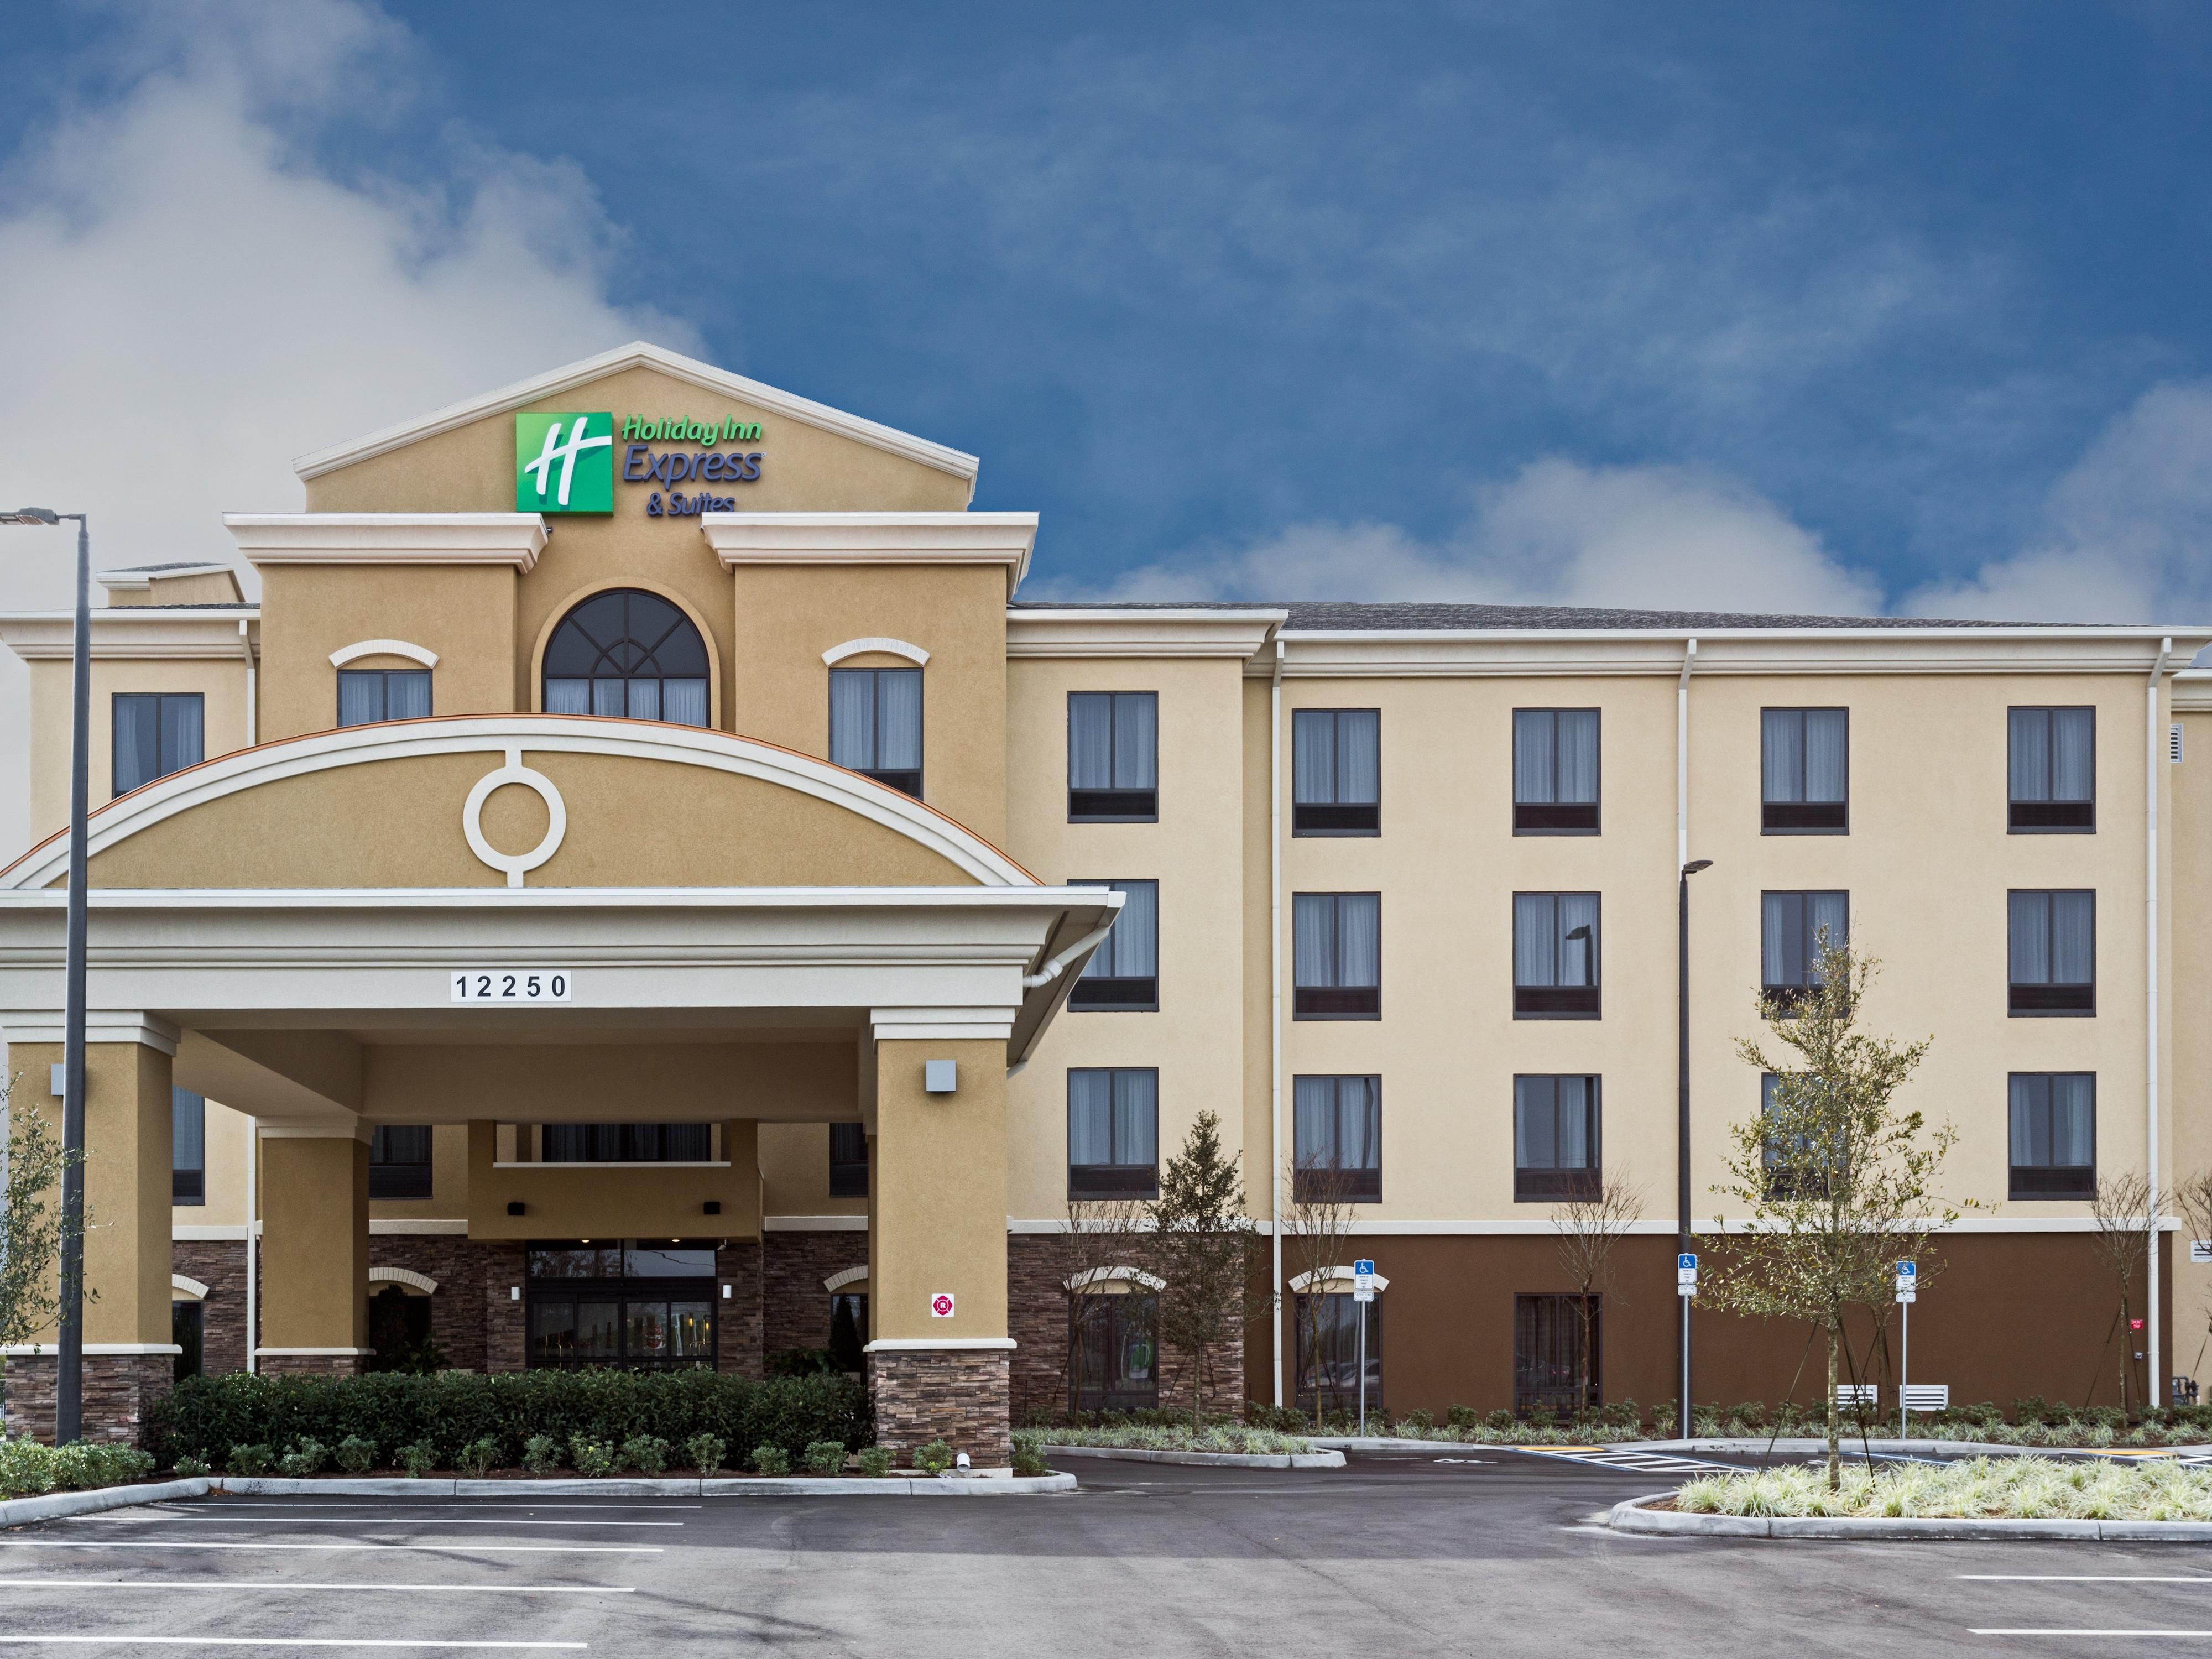 Hoteles de alojamiento prolongado Staybridge Suites en Orlando, de IHG